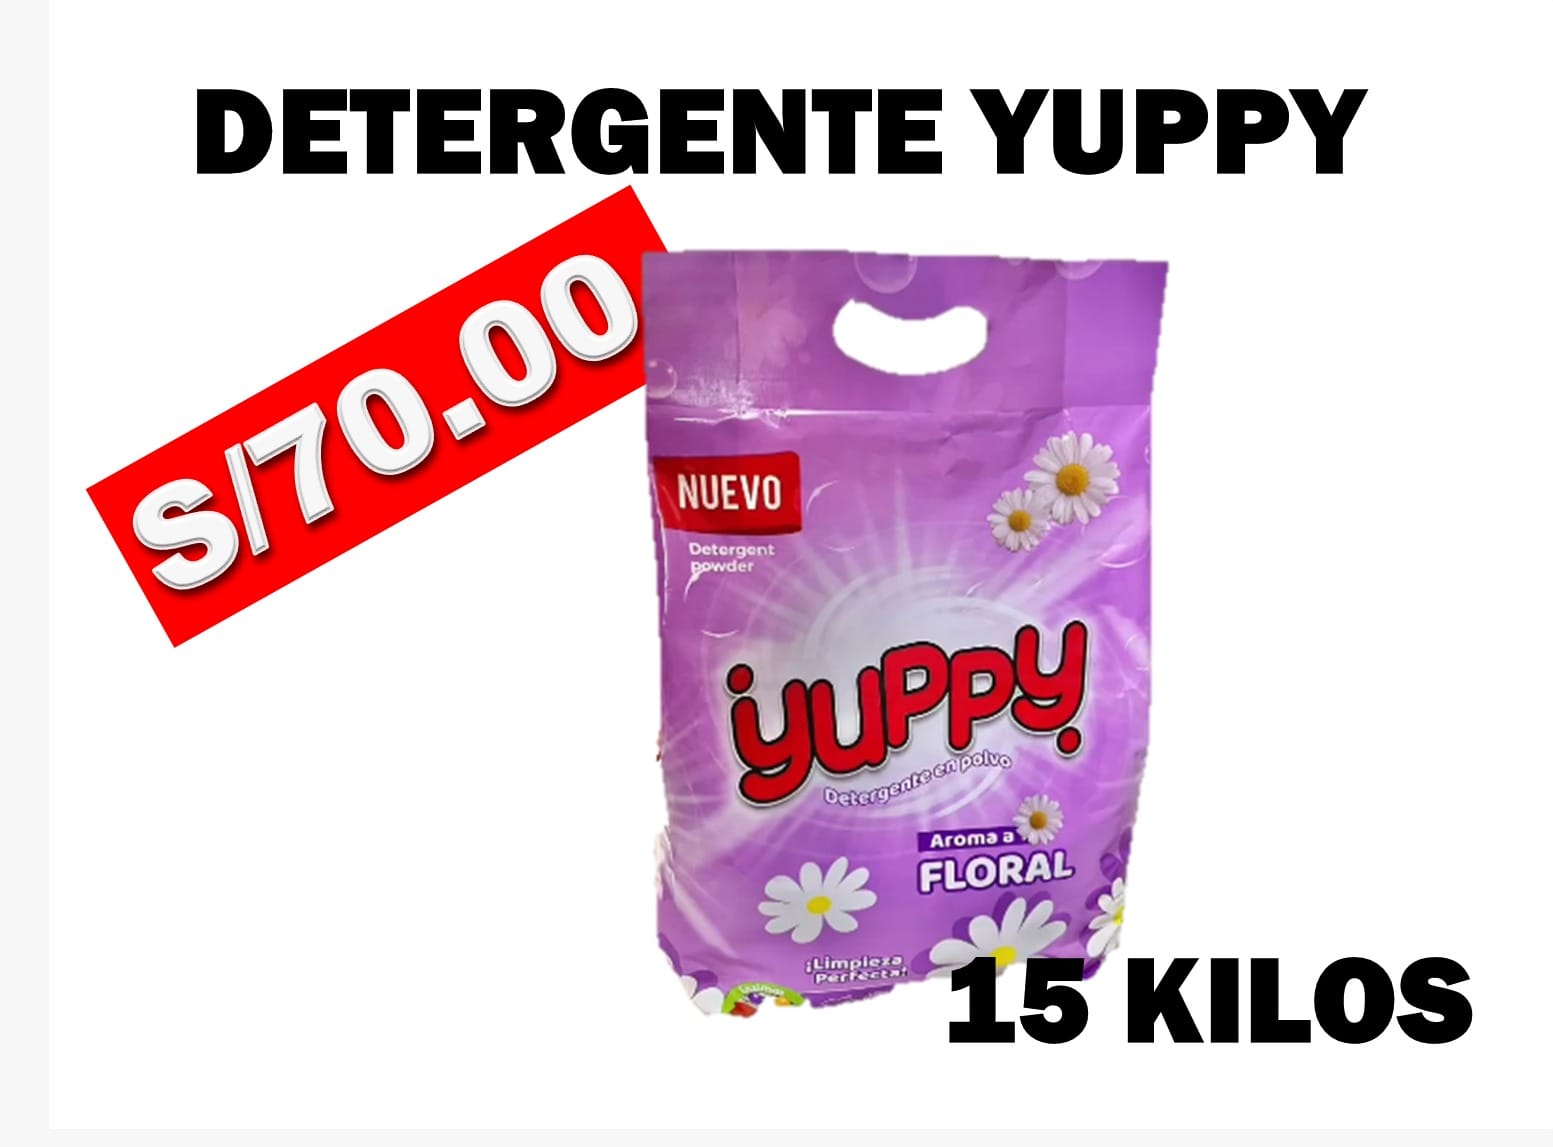 Detergente Yuppy